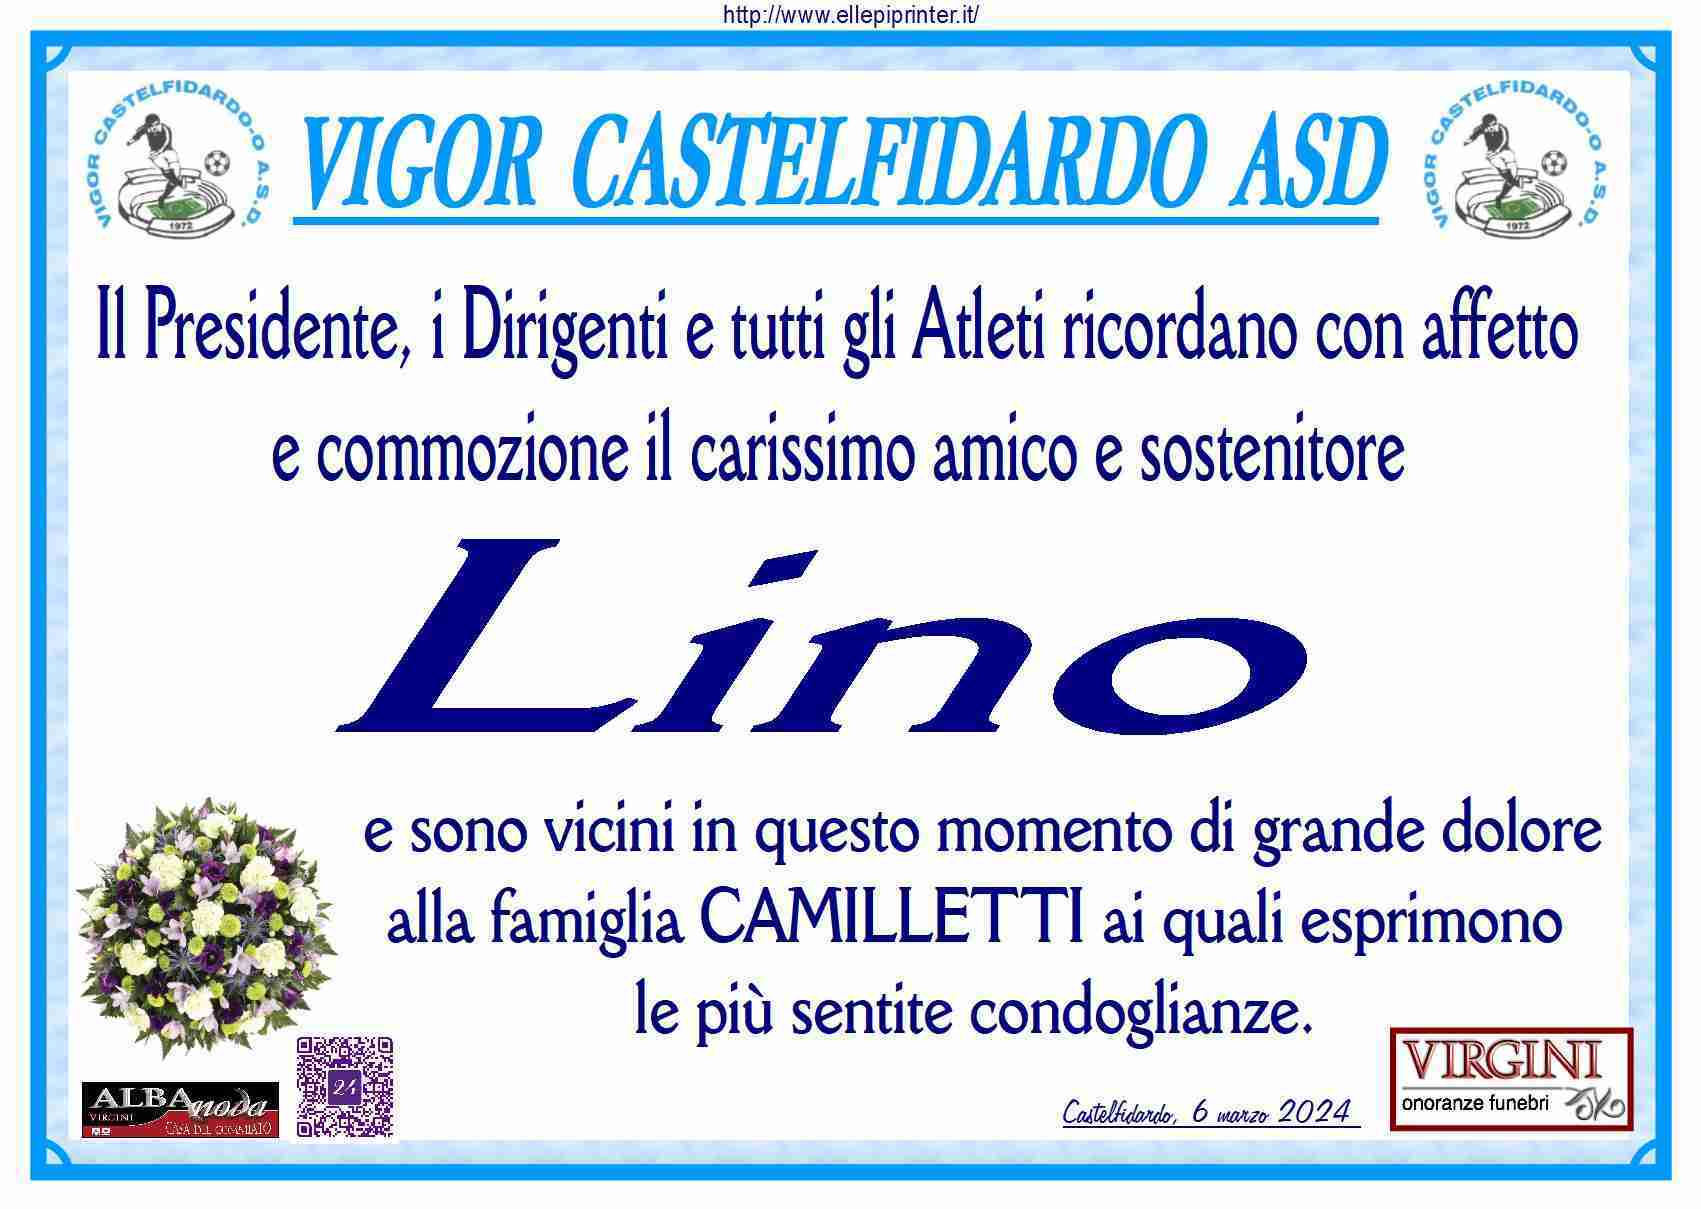 Lino Camilletti